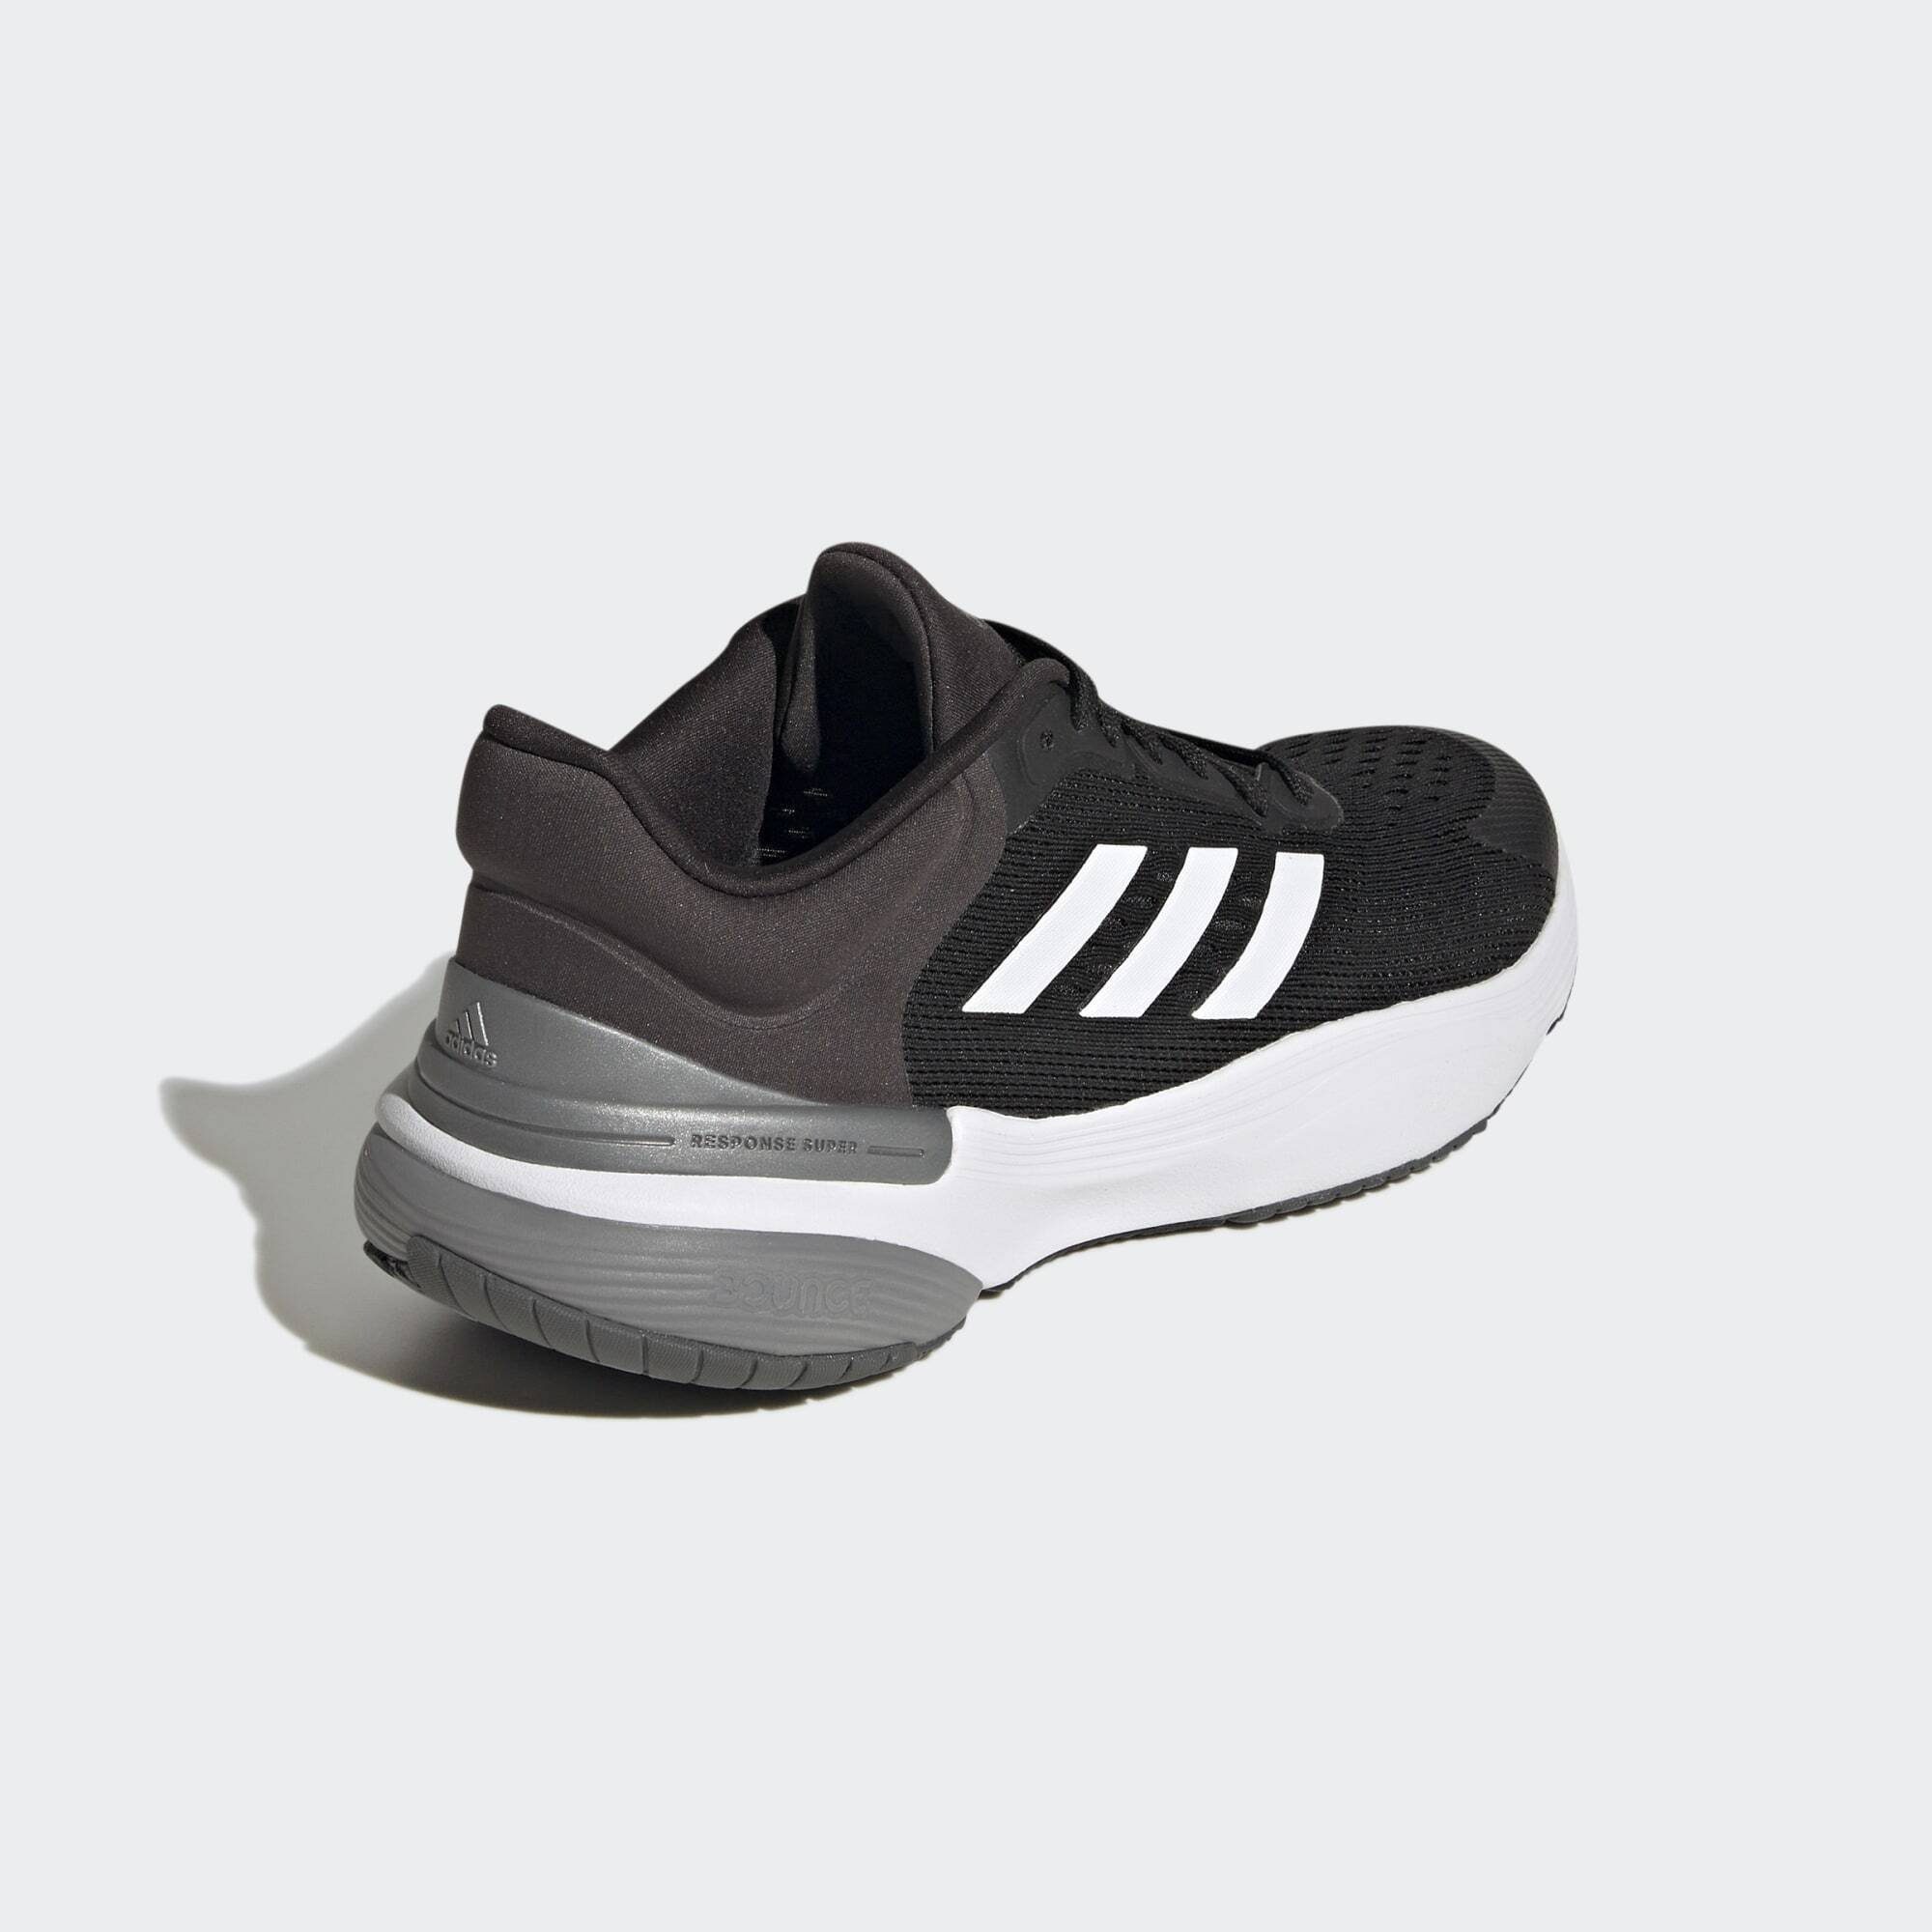 White Black Cloud LAUFSCHUH RESPONSE / 3.0 Core Sneaker Carbon Performance / adidas SUPER